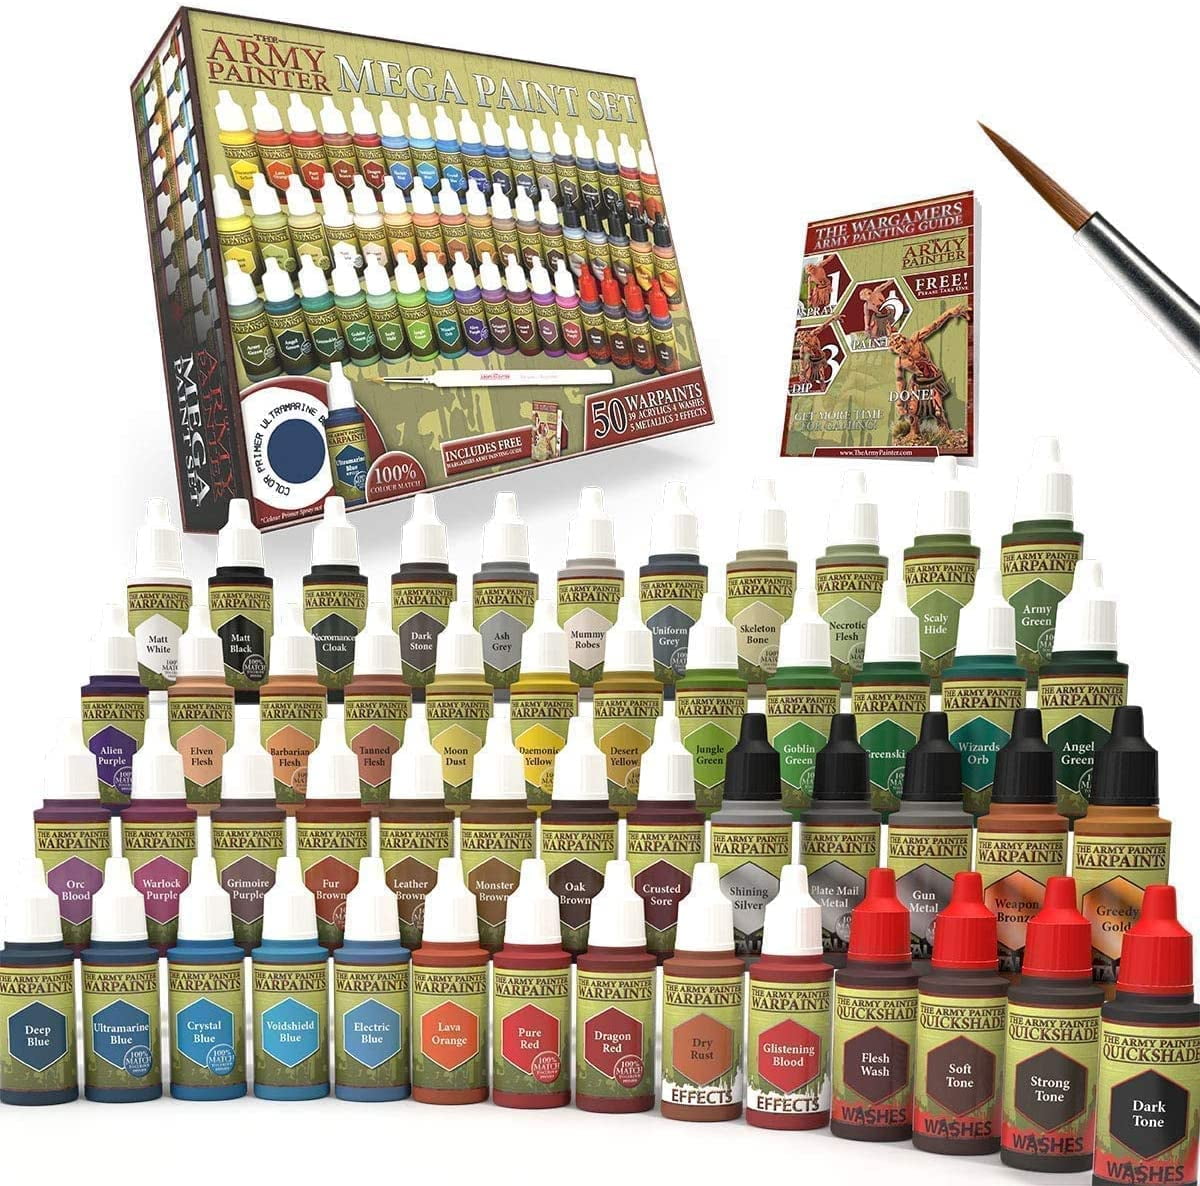 The Army Painter Mega Paint Set WP8021 - Warpaints Miniature Painting Kit -  Model Paint Set 